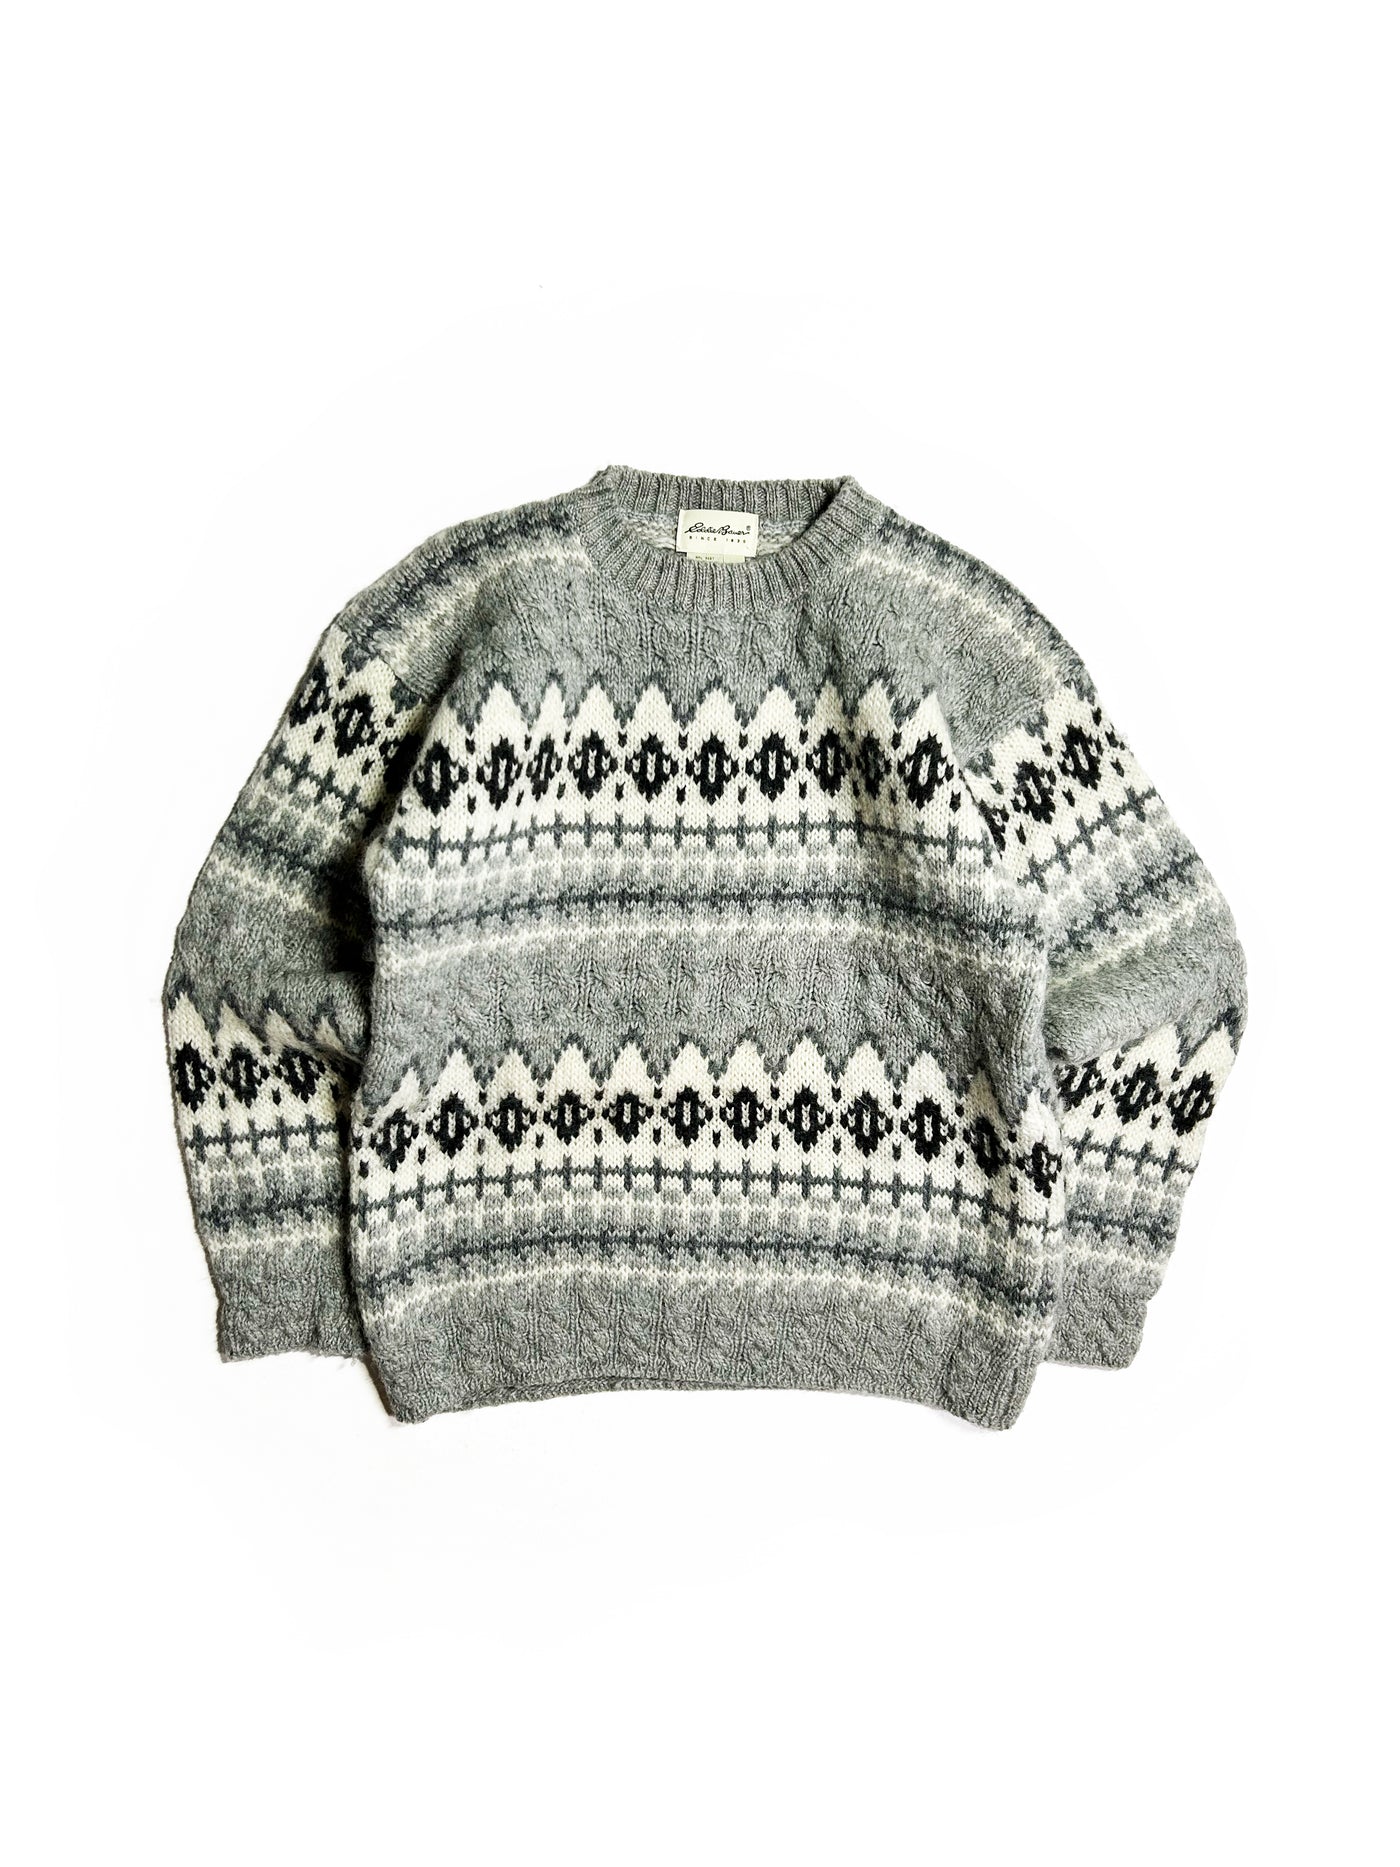 2000s Eddie Bauer Sweater